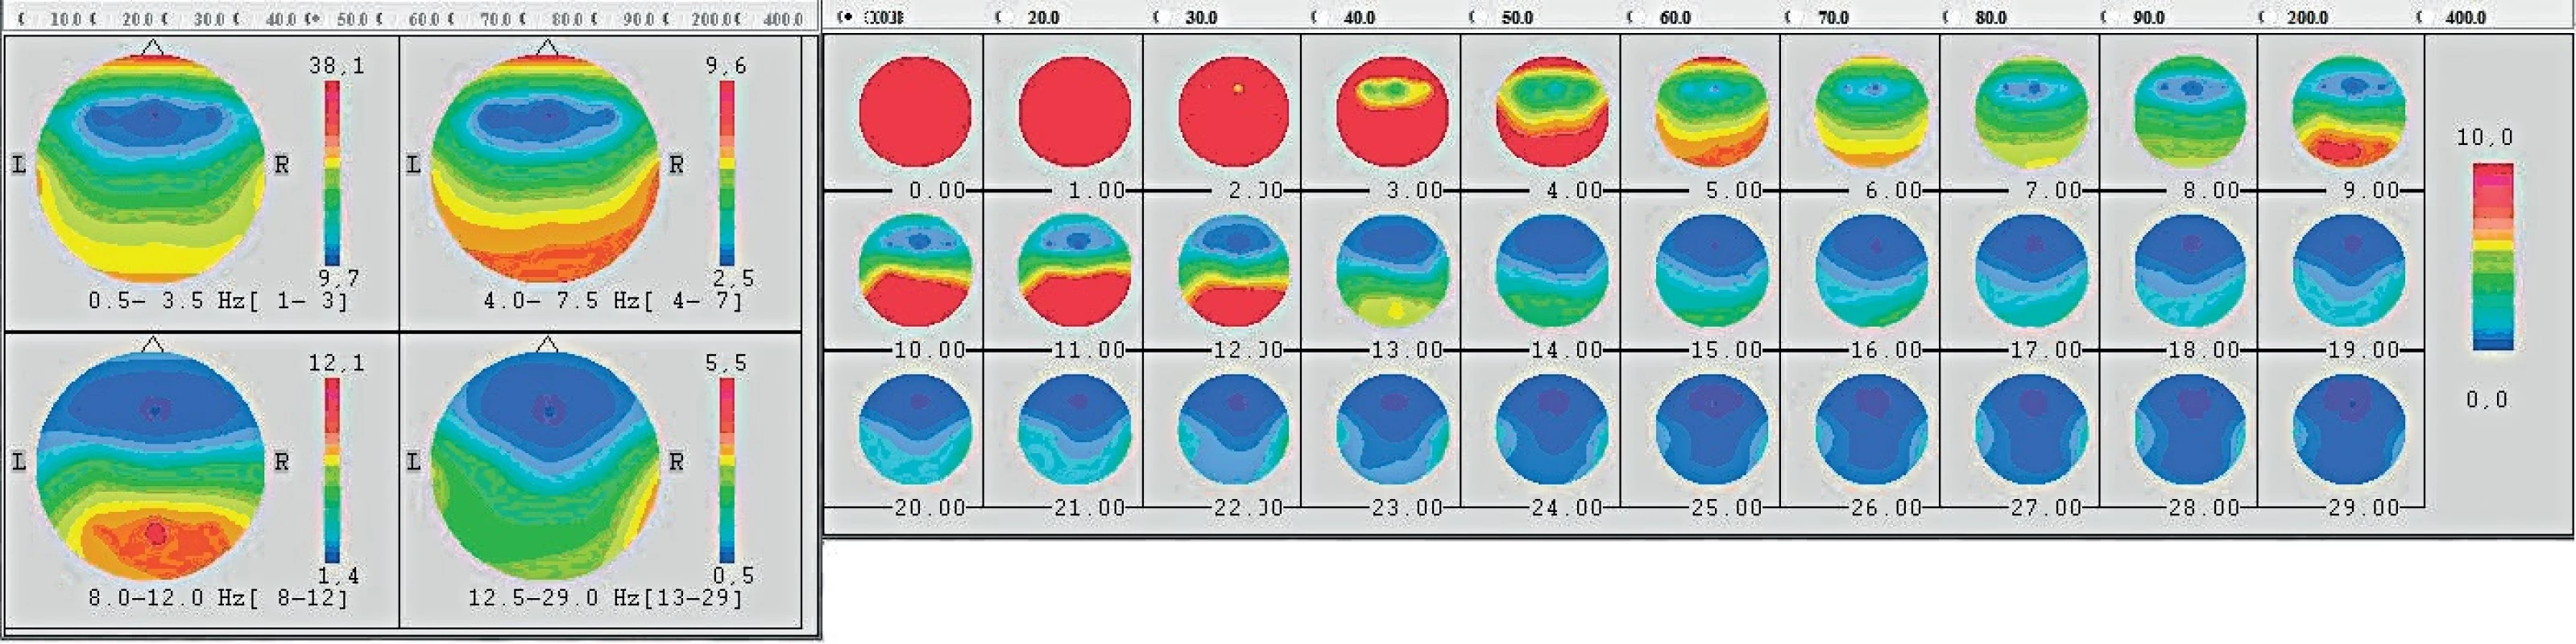 Frekvenční mozkové mapování EEG aktivity při hře na housle (proband 5) - červená barvy je maximum, modrá je minimum aktivity.